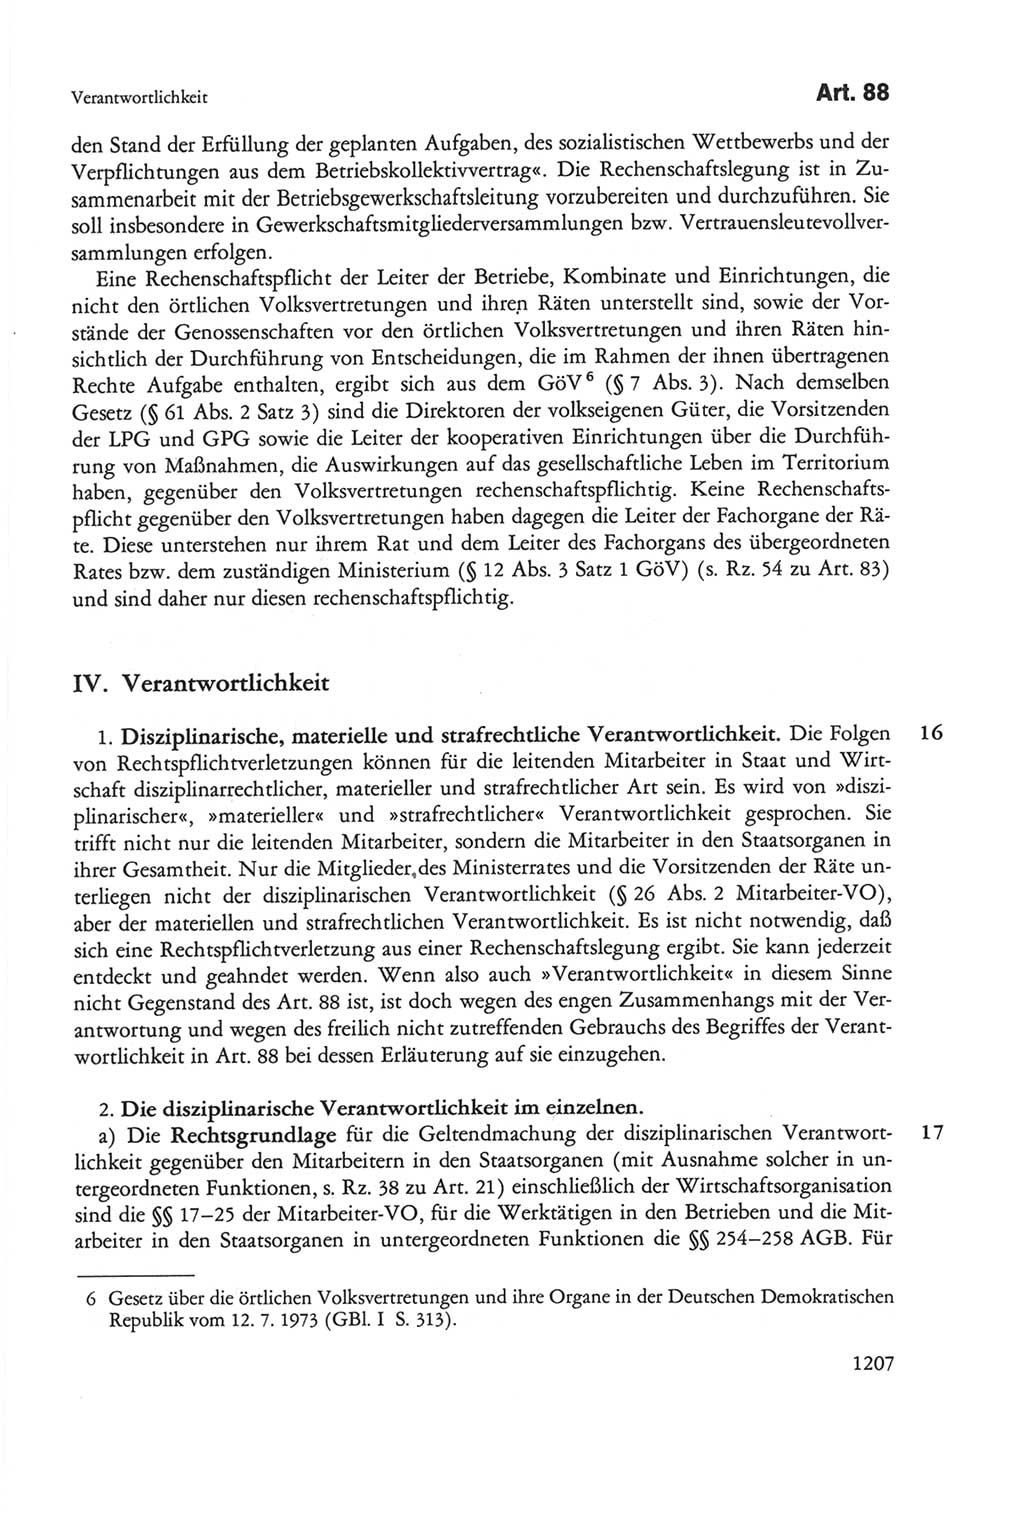 Die sozialistische Verfassung der Deutschen Demokratischen Republik (DDR), Kommentar mit einem Nachtrag 1997, Seite 1207 (Soz. Verf. DDR Komm. Nachtr. 1997, S. 1207)